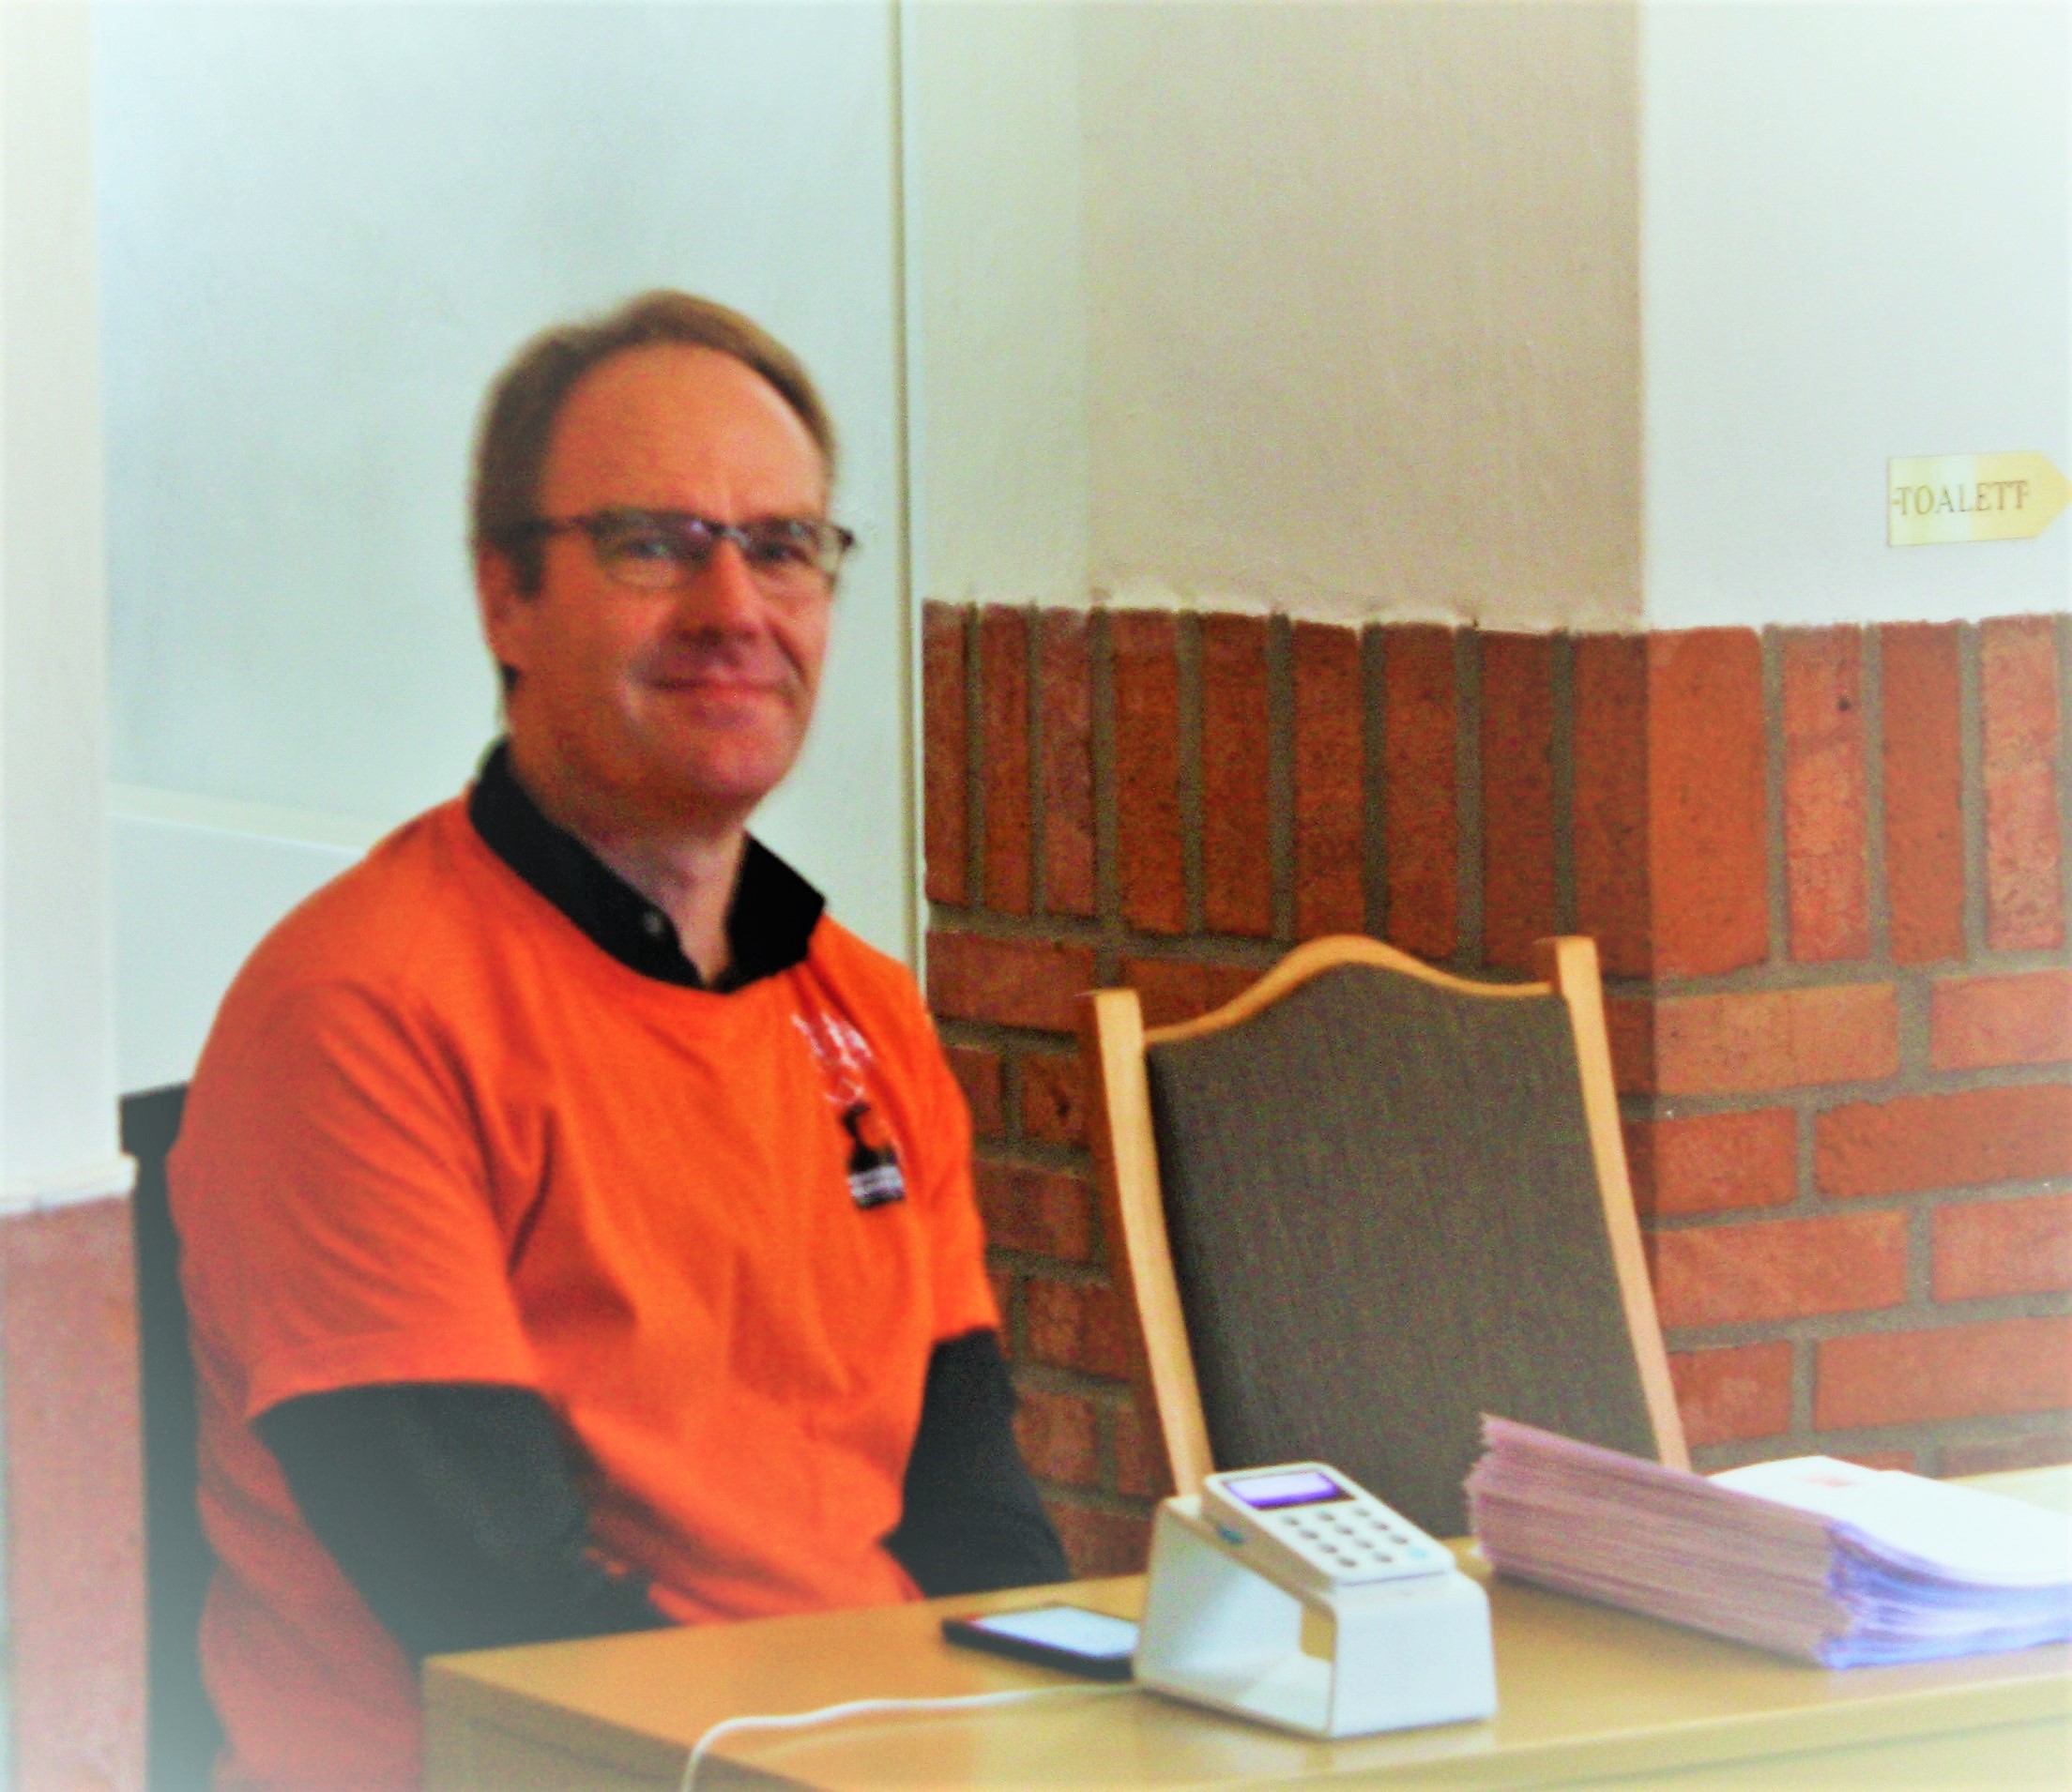 Mann med briller og oransje t-skjorte sitter med betalingsterminal og programhefter foran seg.